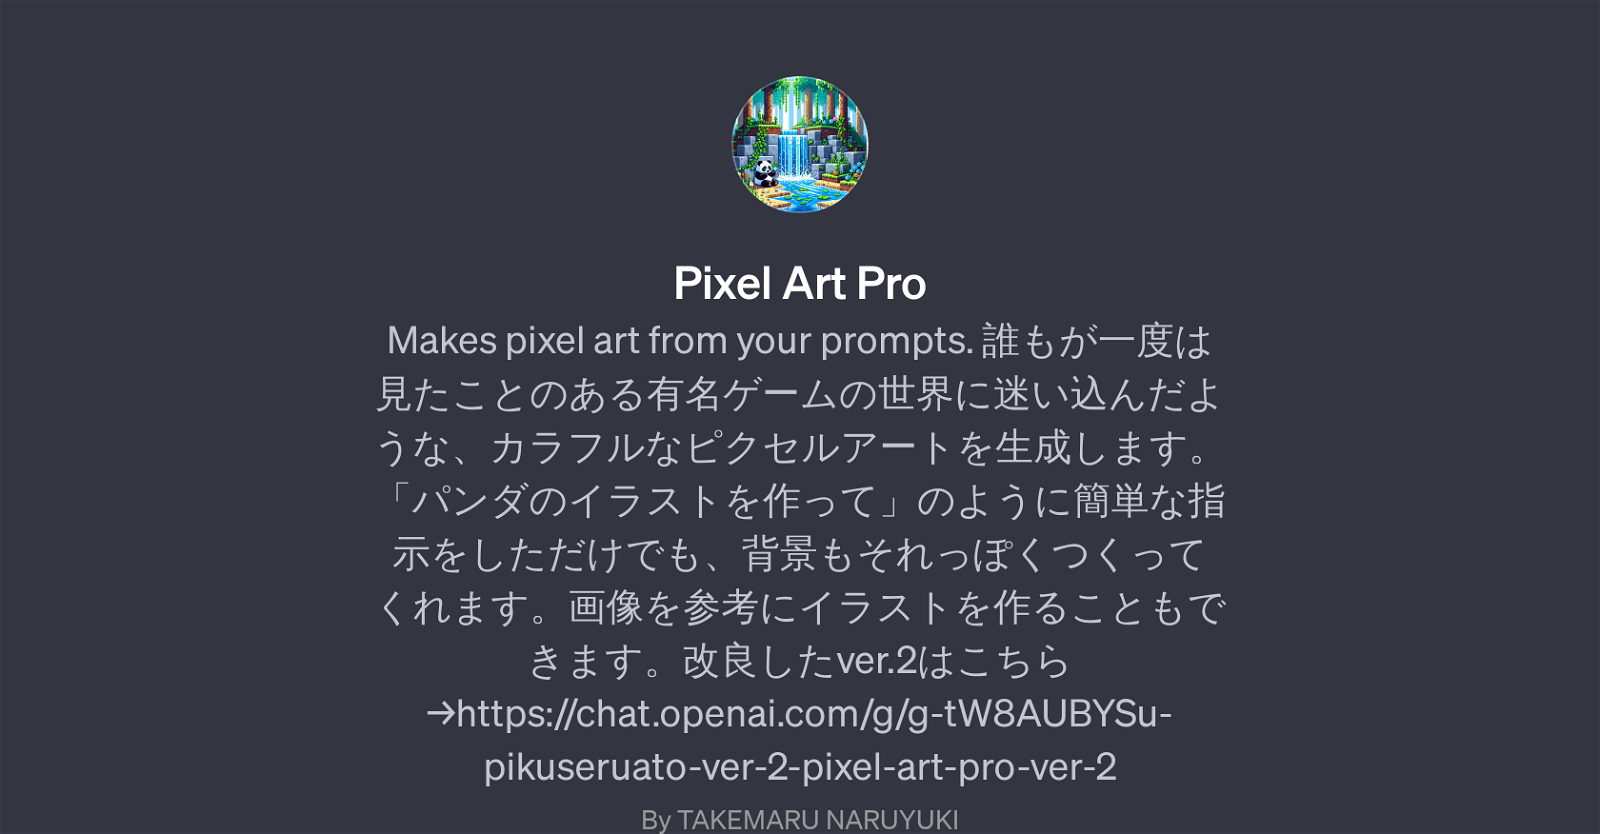 Pixel Art Pro website